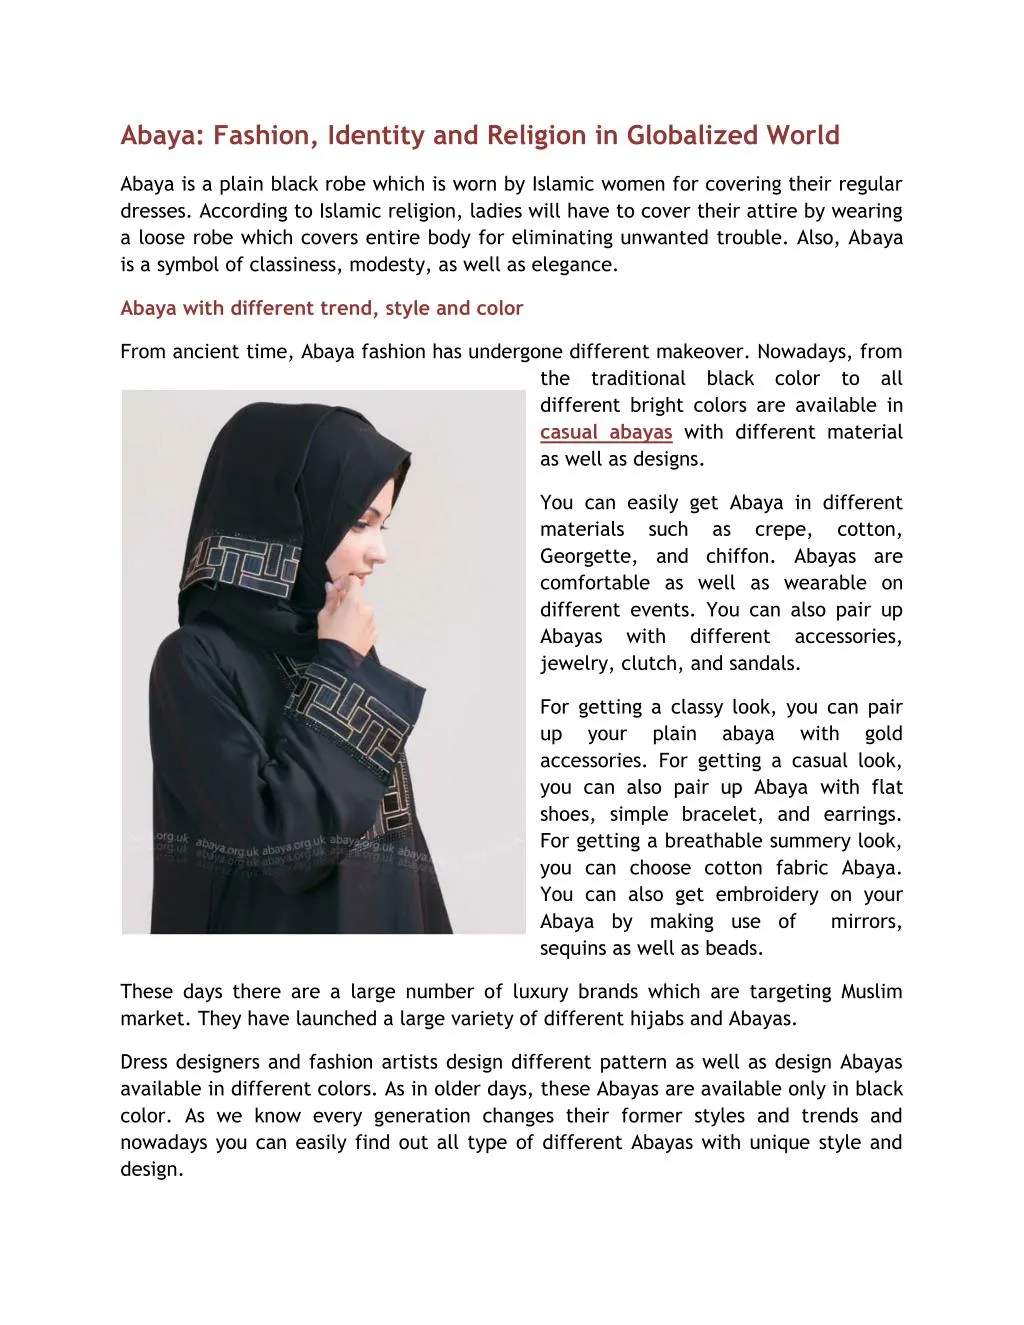 abaya fashion identity and religion in globalized